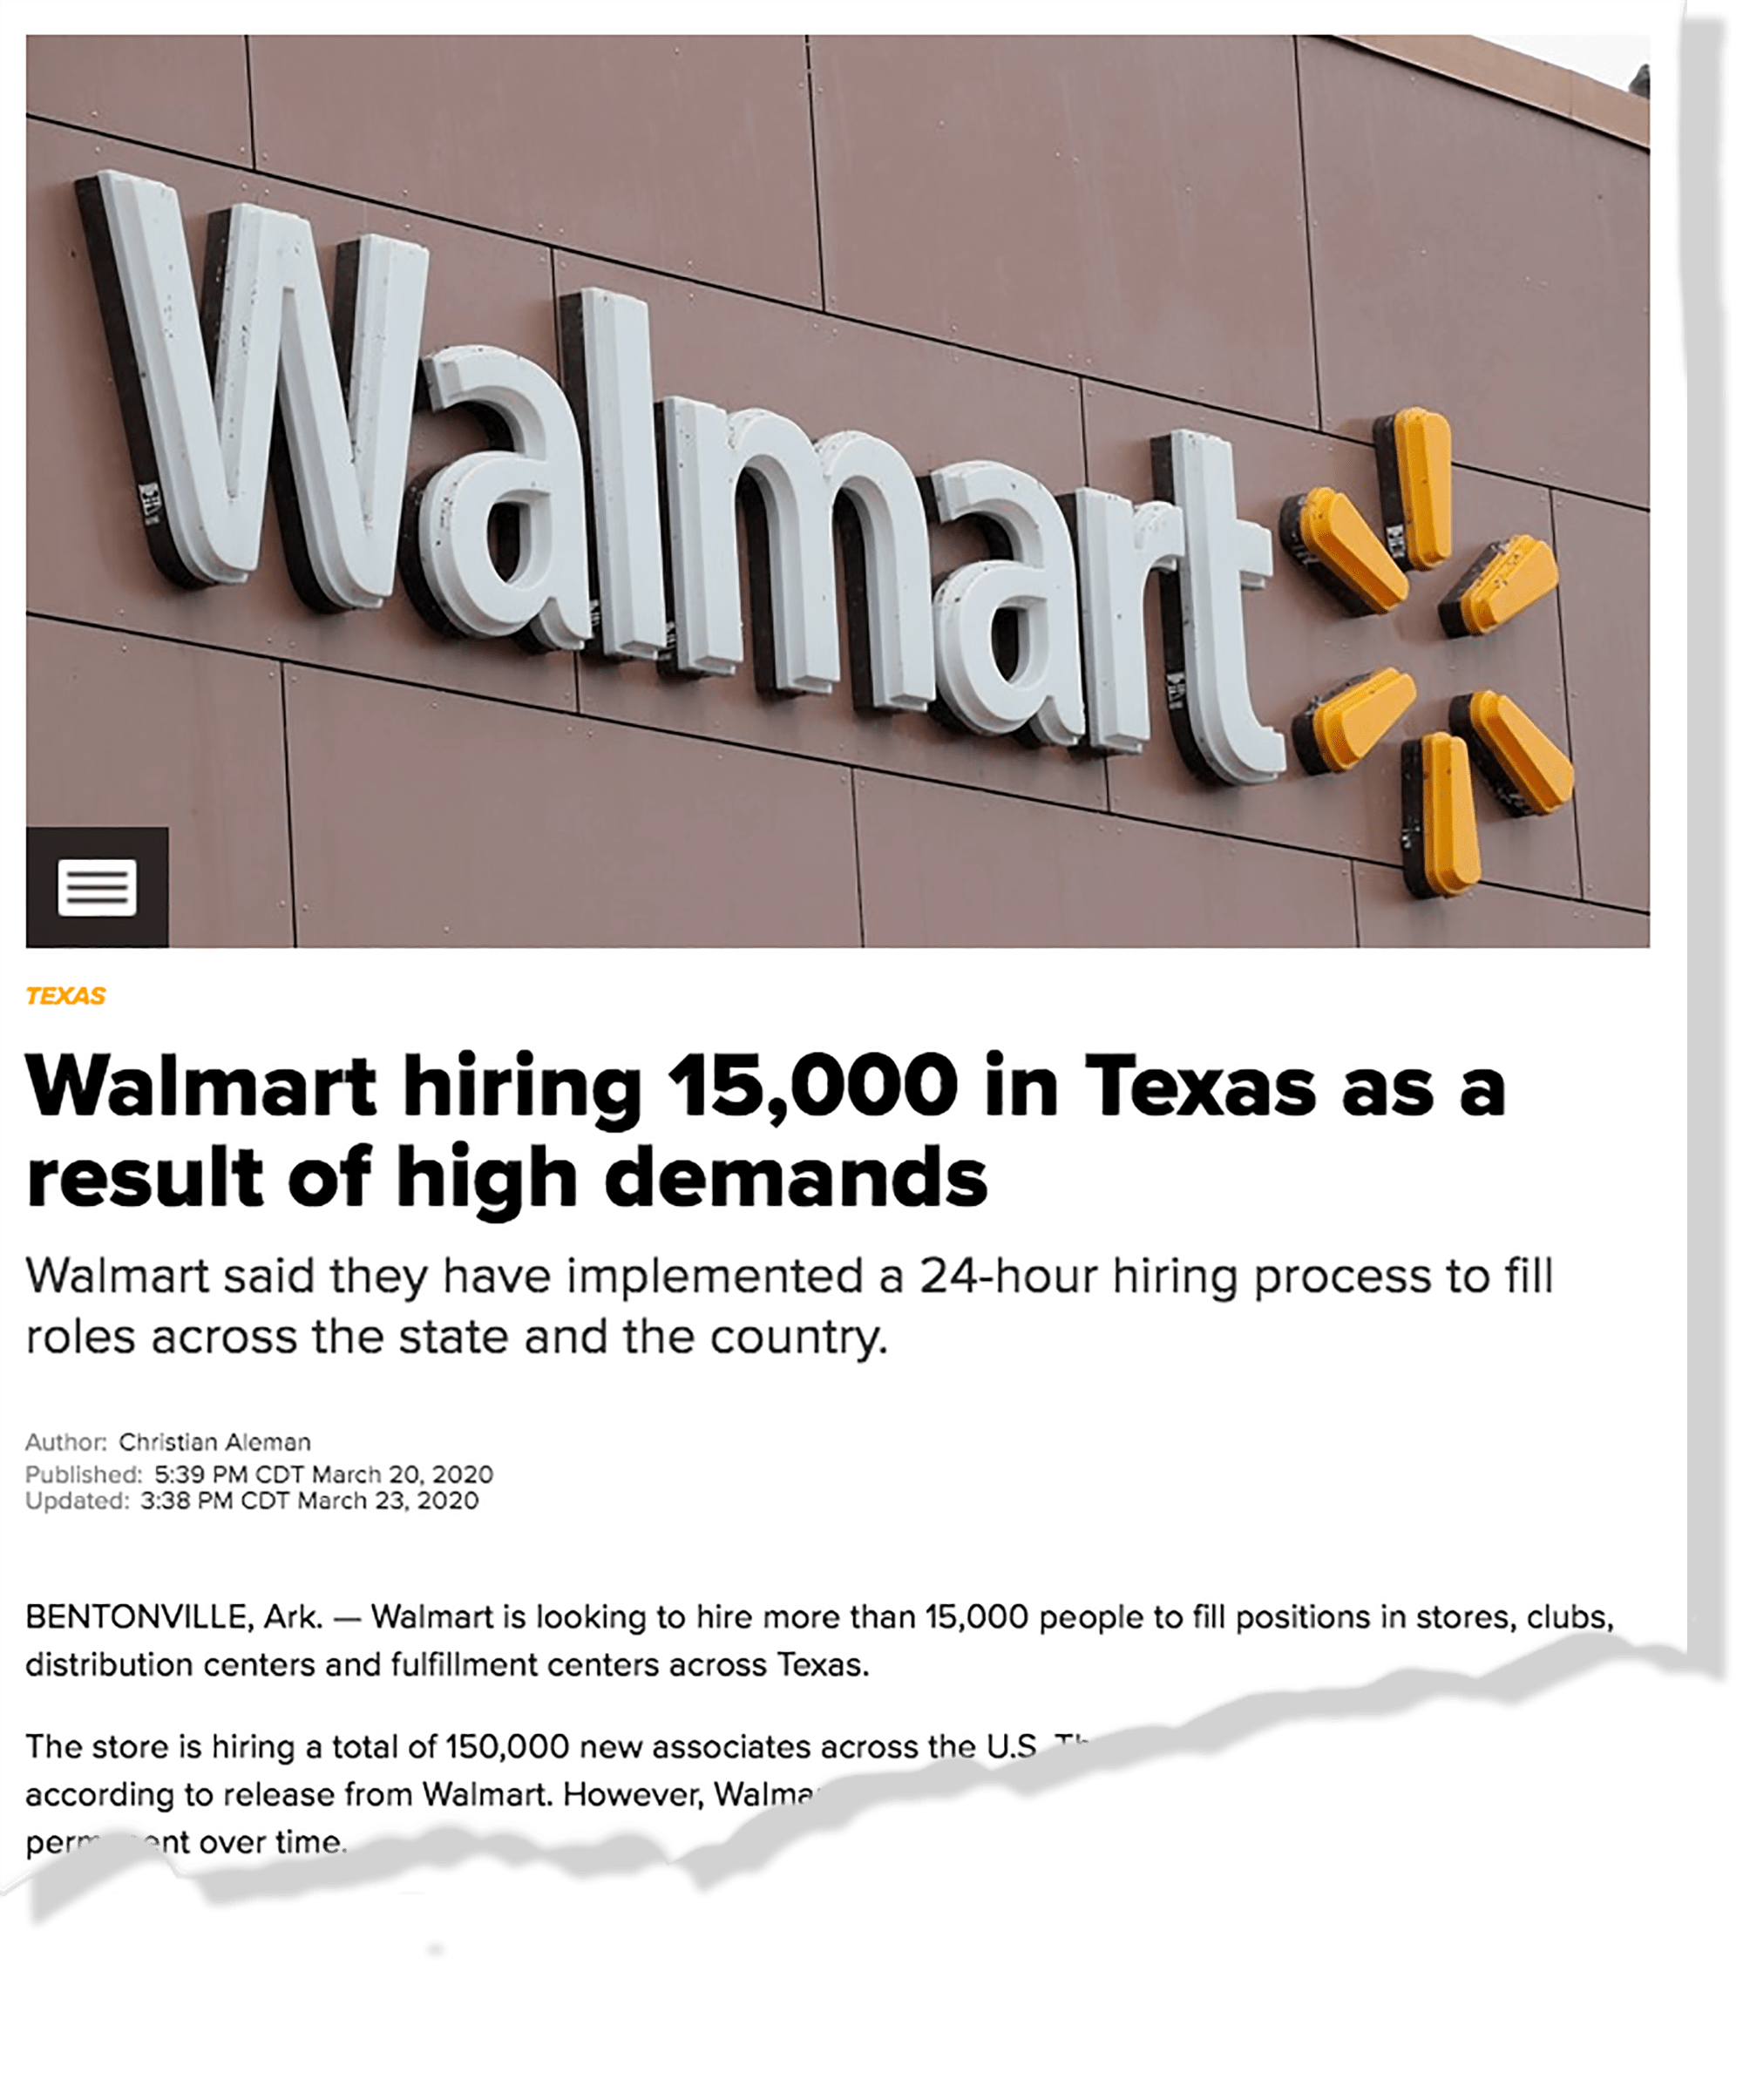 Walmart hiring 15,000 in Texas - Allyn Media